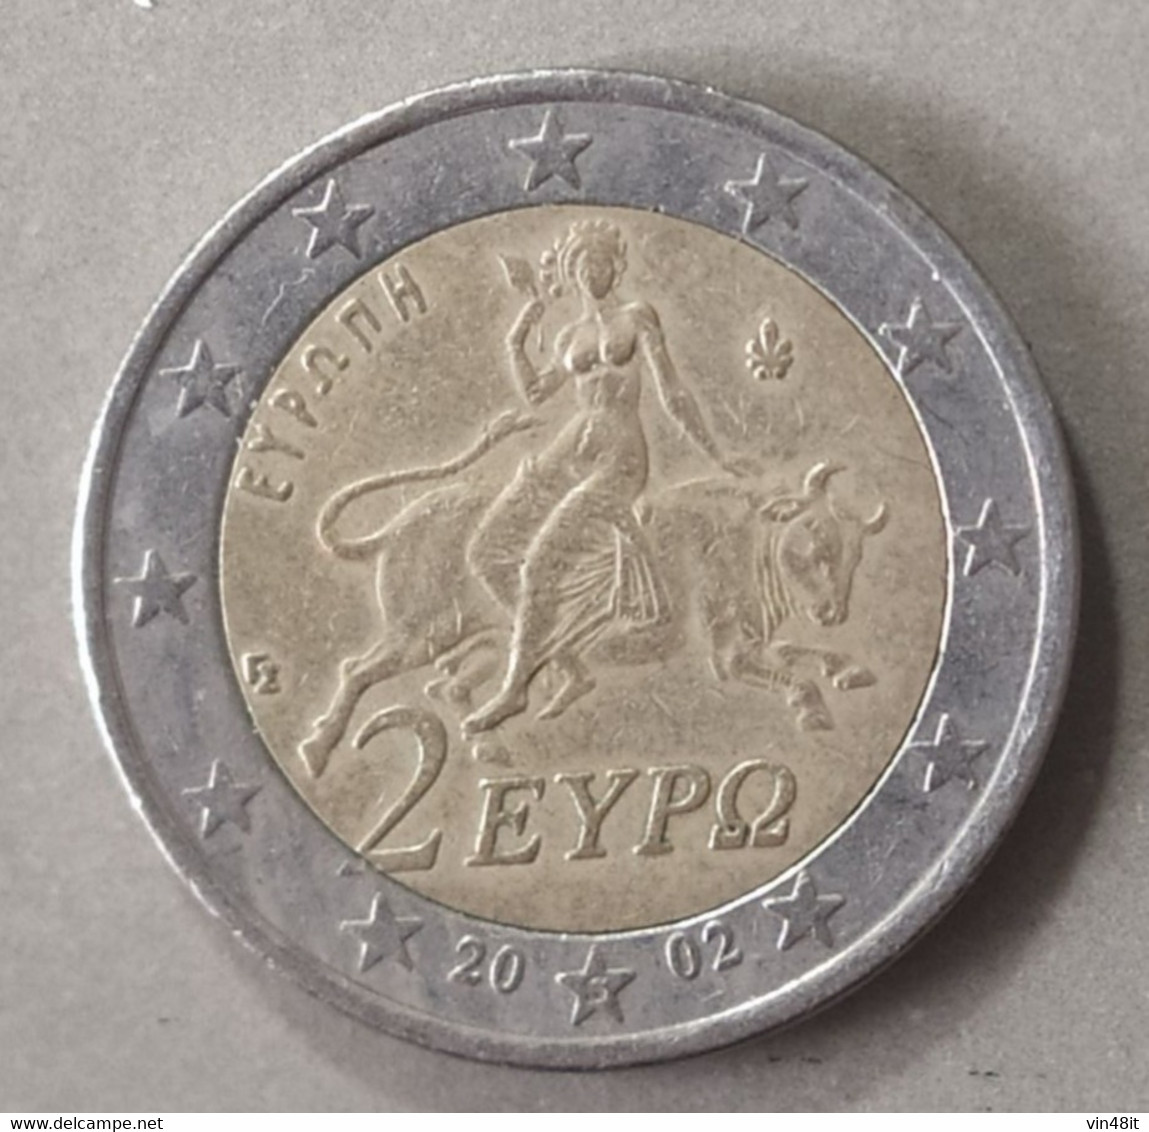 2002 -  GRECIA -  MONETA IN EURO - DEL VALORE DI  2,00  EURO  - USATA - Cyprus